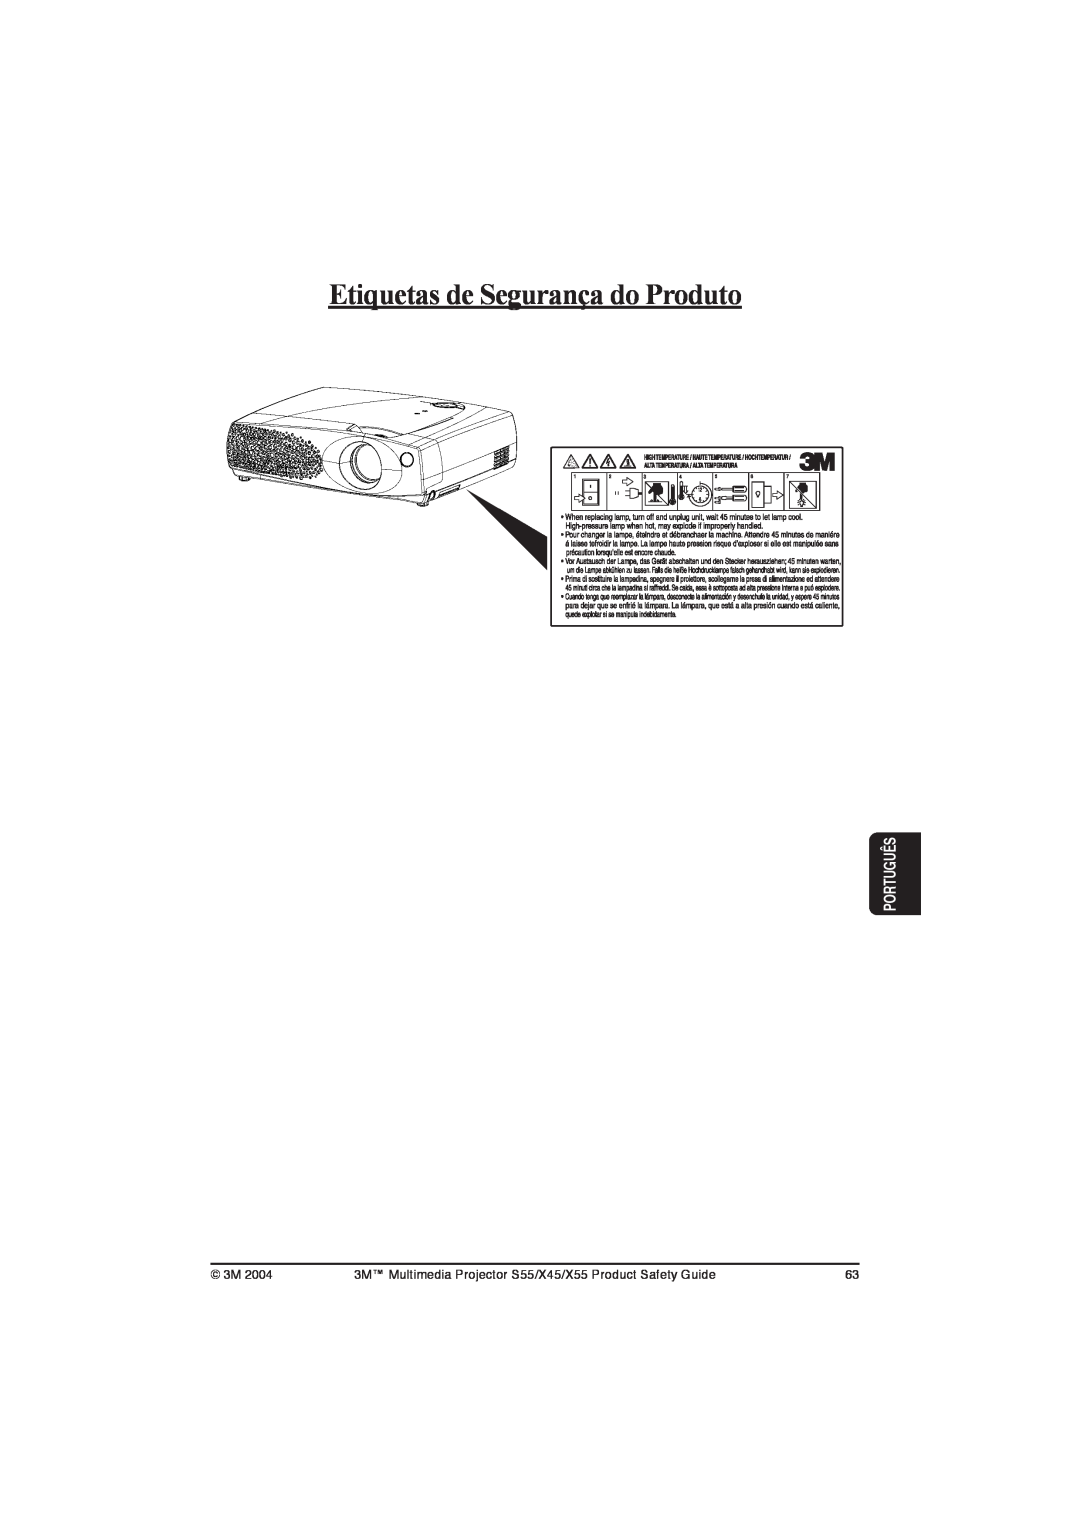 3M X45, S55, X55 manual Etiquetas de Segurança do Produto, Português 